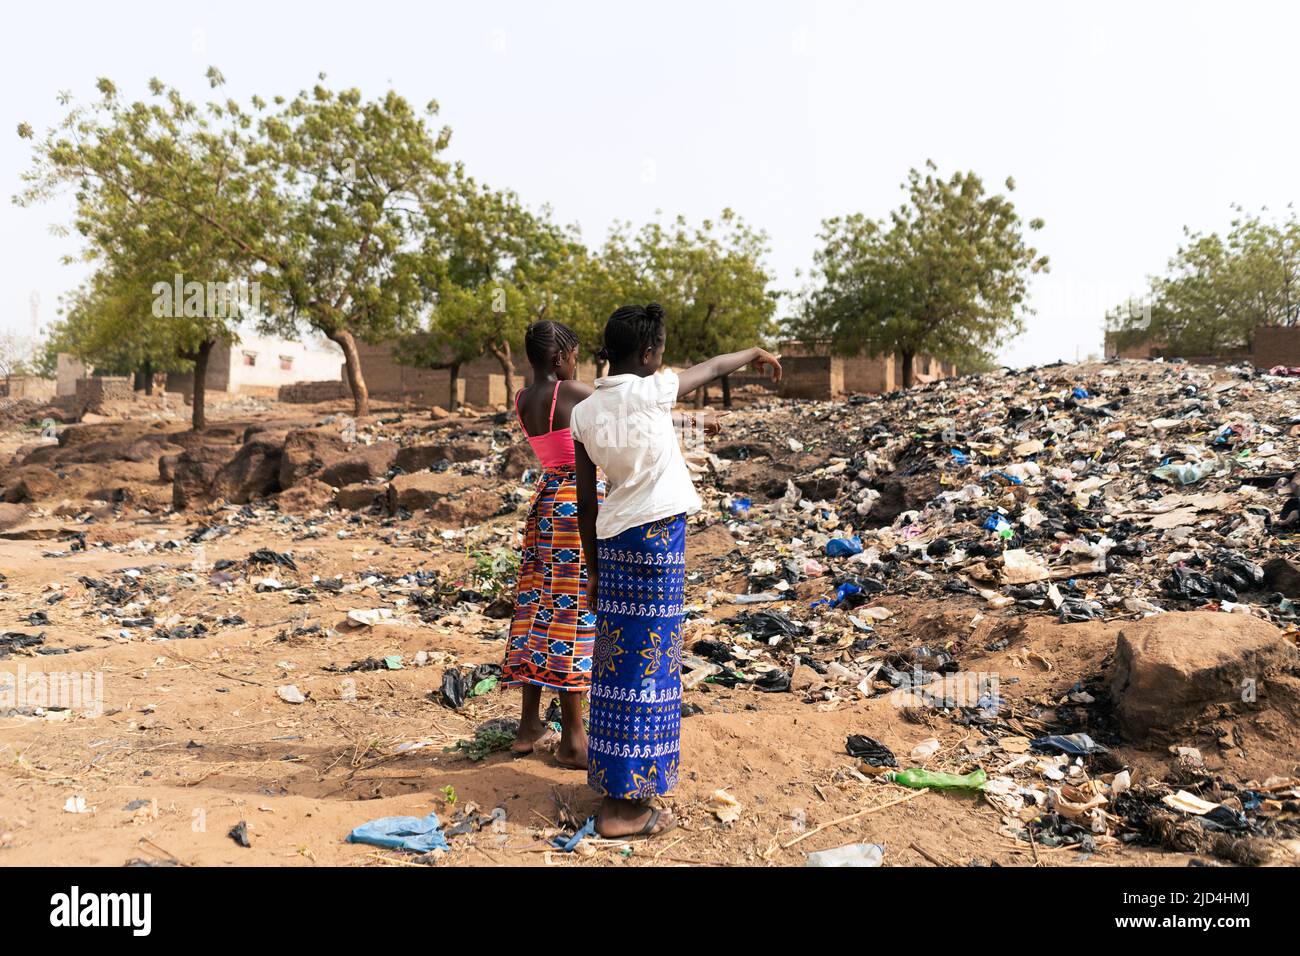 Dos niñas africanas que señalan a la montaña de basura que ocupa la calle de su aldea indicando la mala gestión de los desechos que afligen Foto de stock